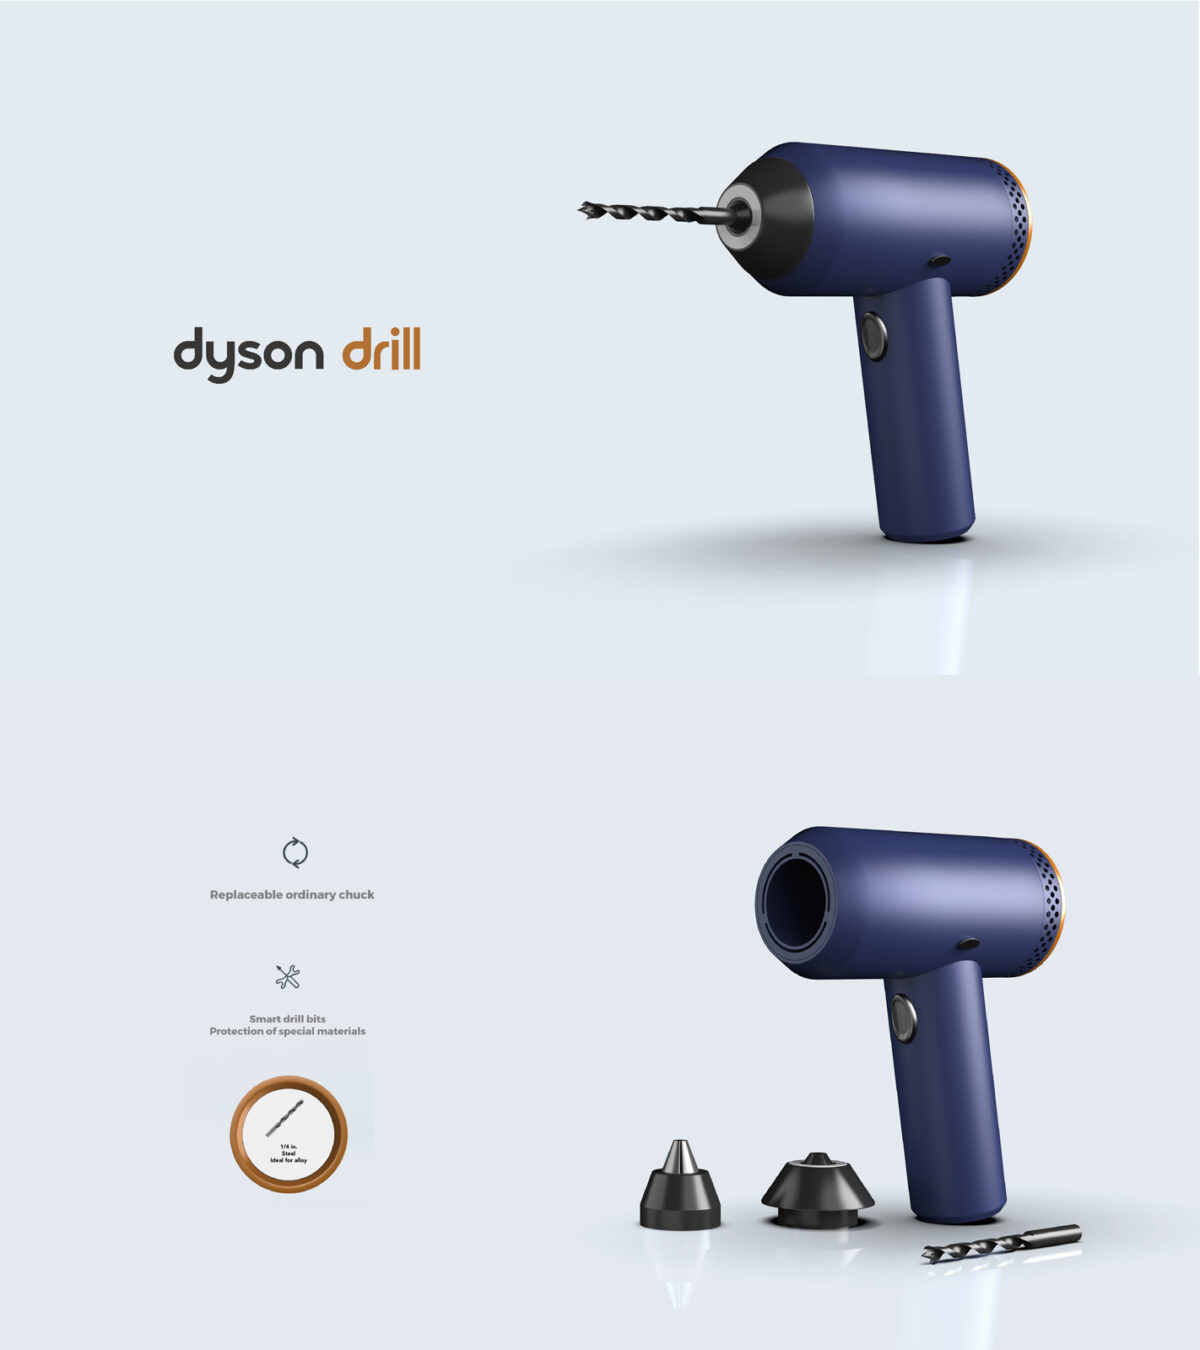 Dyson Smart Drill